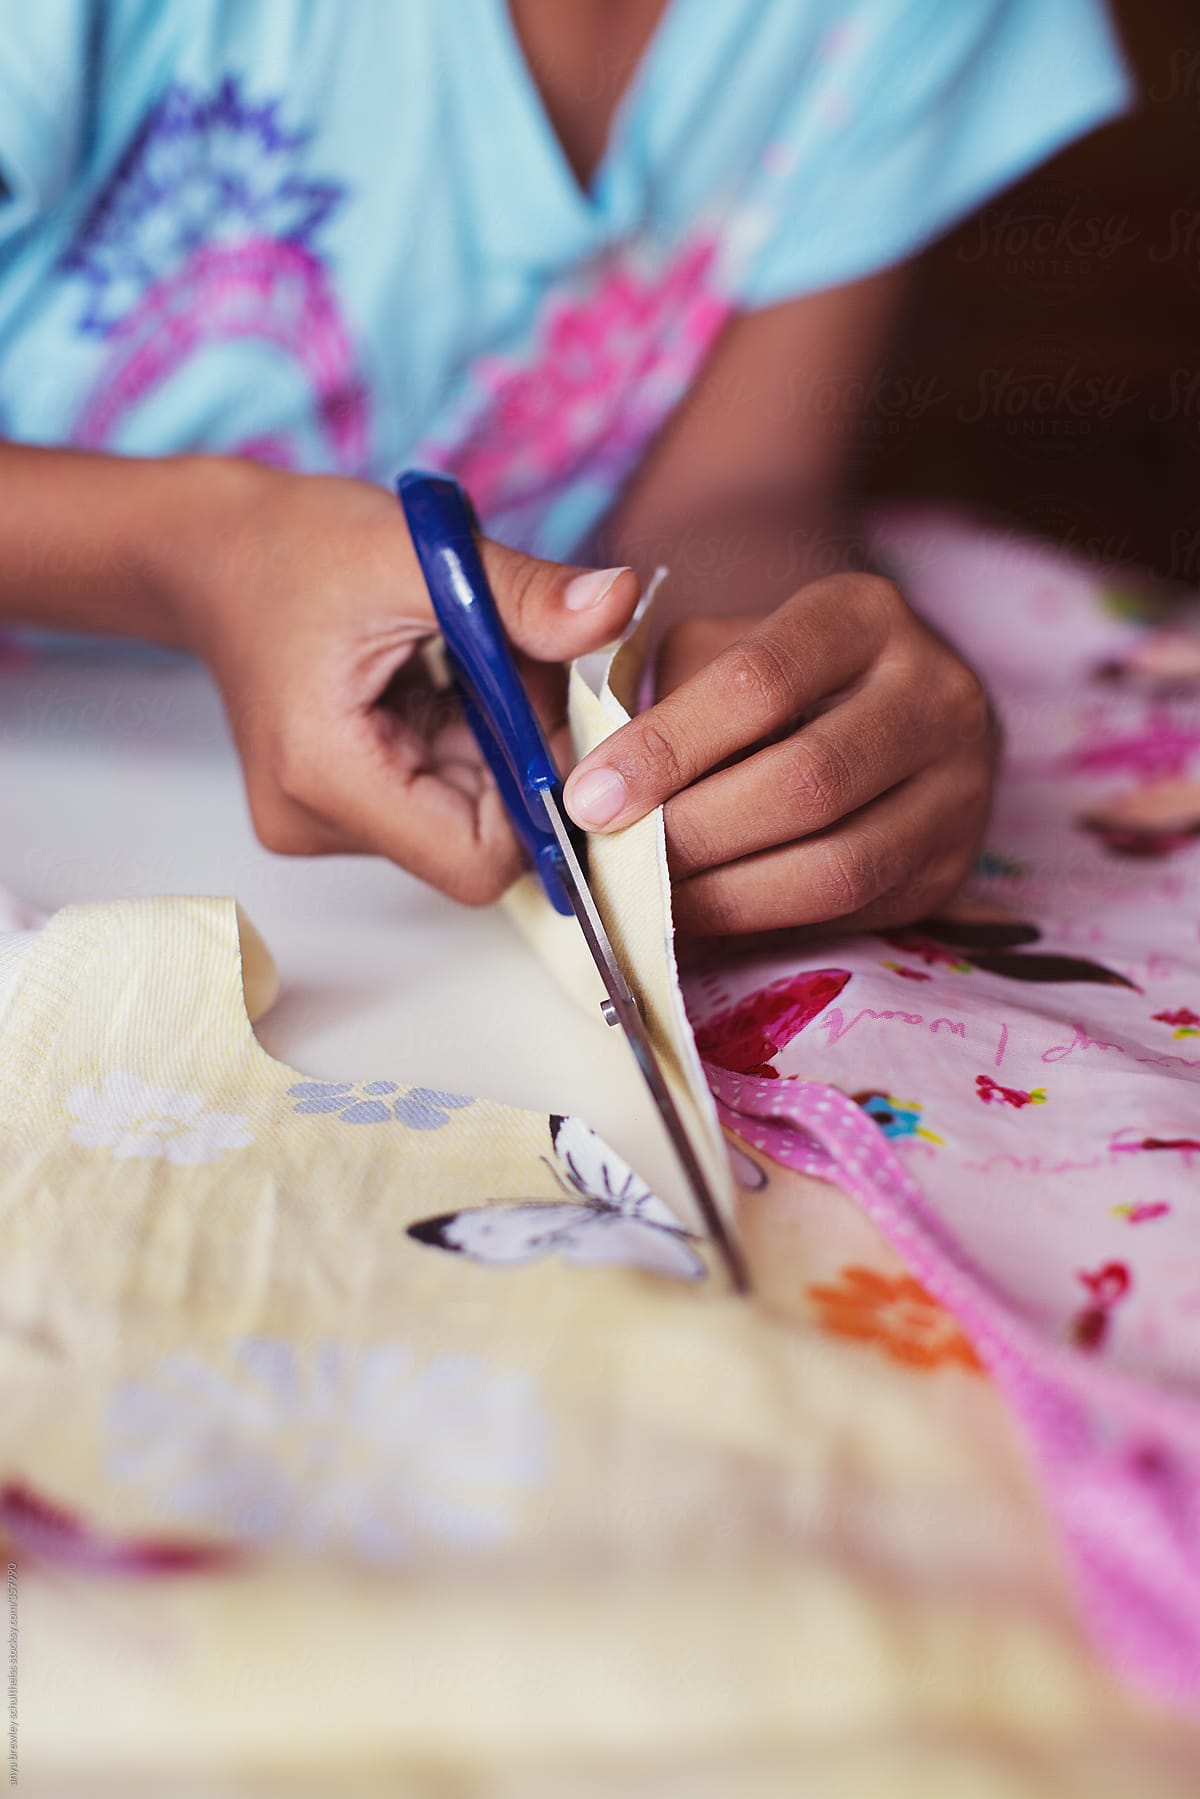 Closeup of a  child using a scissors to cut fabric